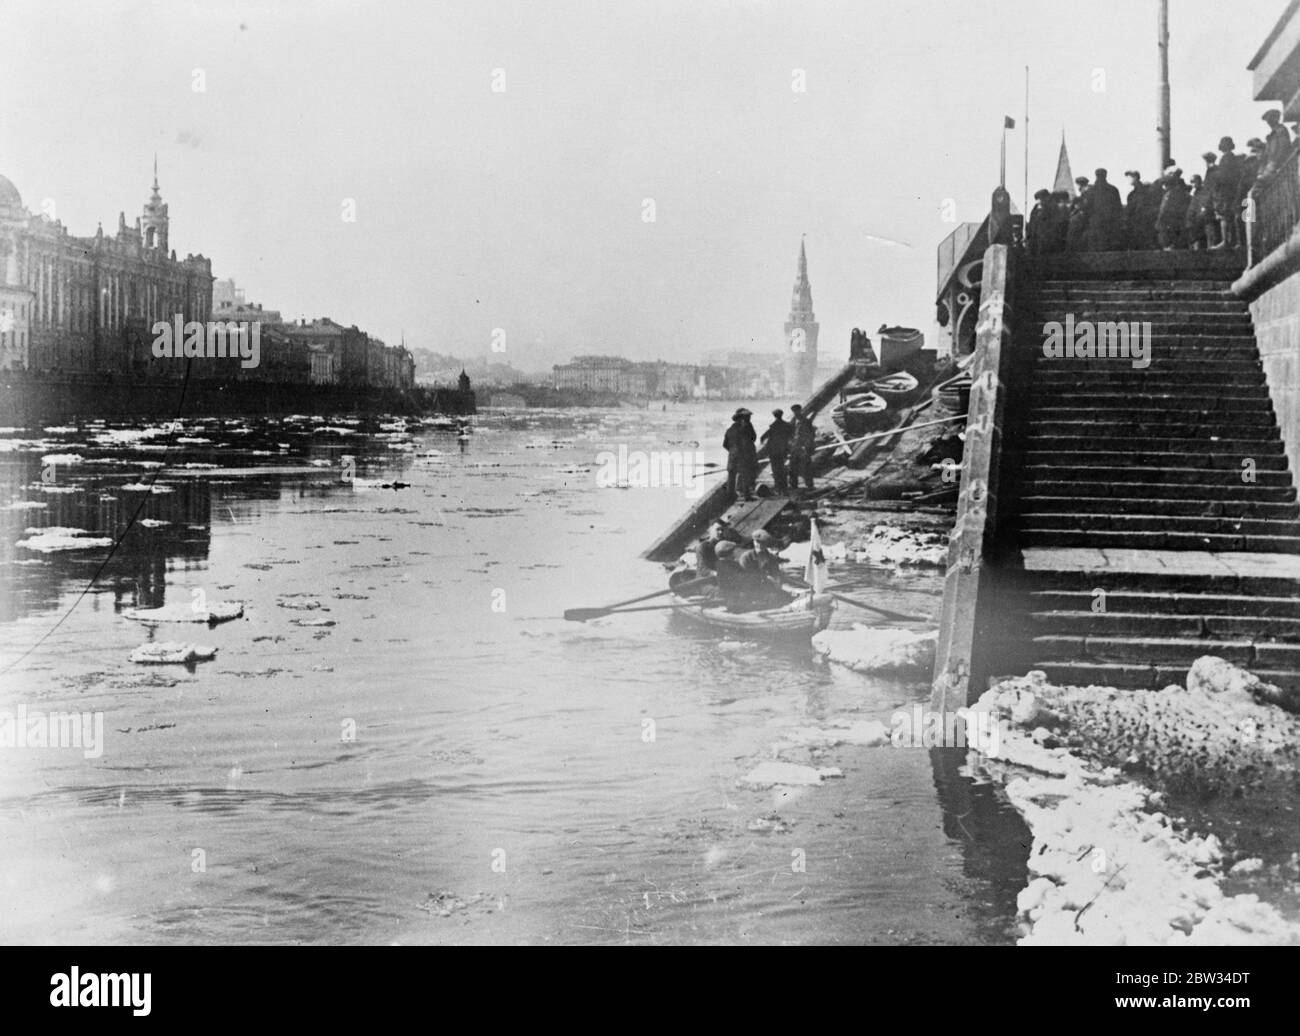 La glace commence à se briser à Moscou. Garde de jour et de nuit en cas d'inondation . La glace de la rivière Moskva , s'est brisée et les remblais sont gardés jour et nuit pour avertir les habitants du danger d'inondation , causé par l'enflure des rivières par la fonte de la glace . La fonte de la glace qui coule le long de la rivière Moskva à Moscou . 26 avril 1932 Banque D'Images